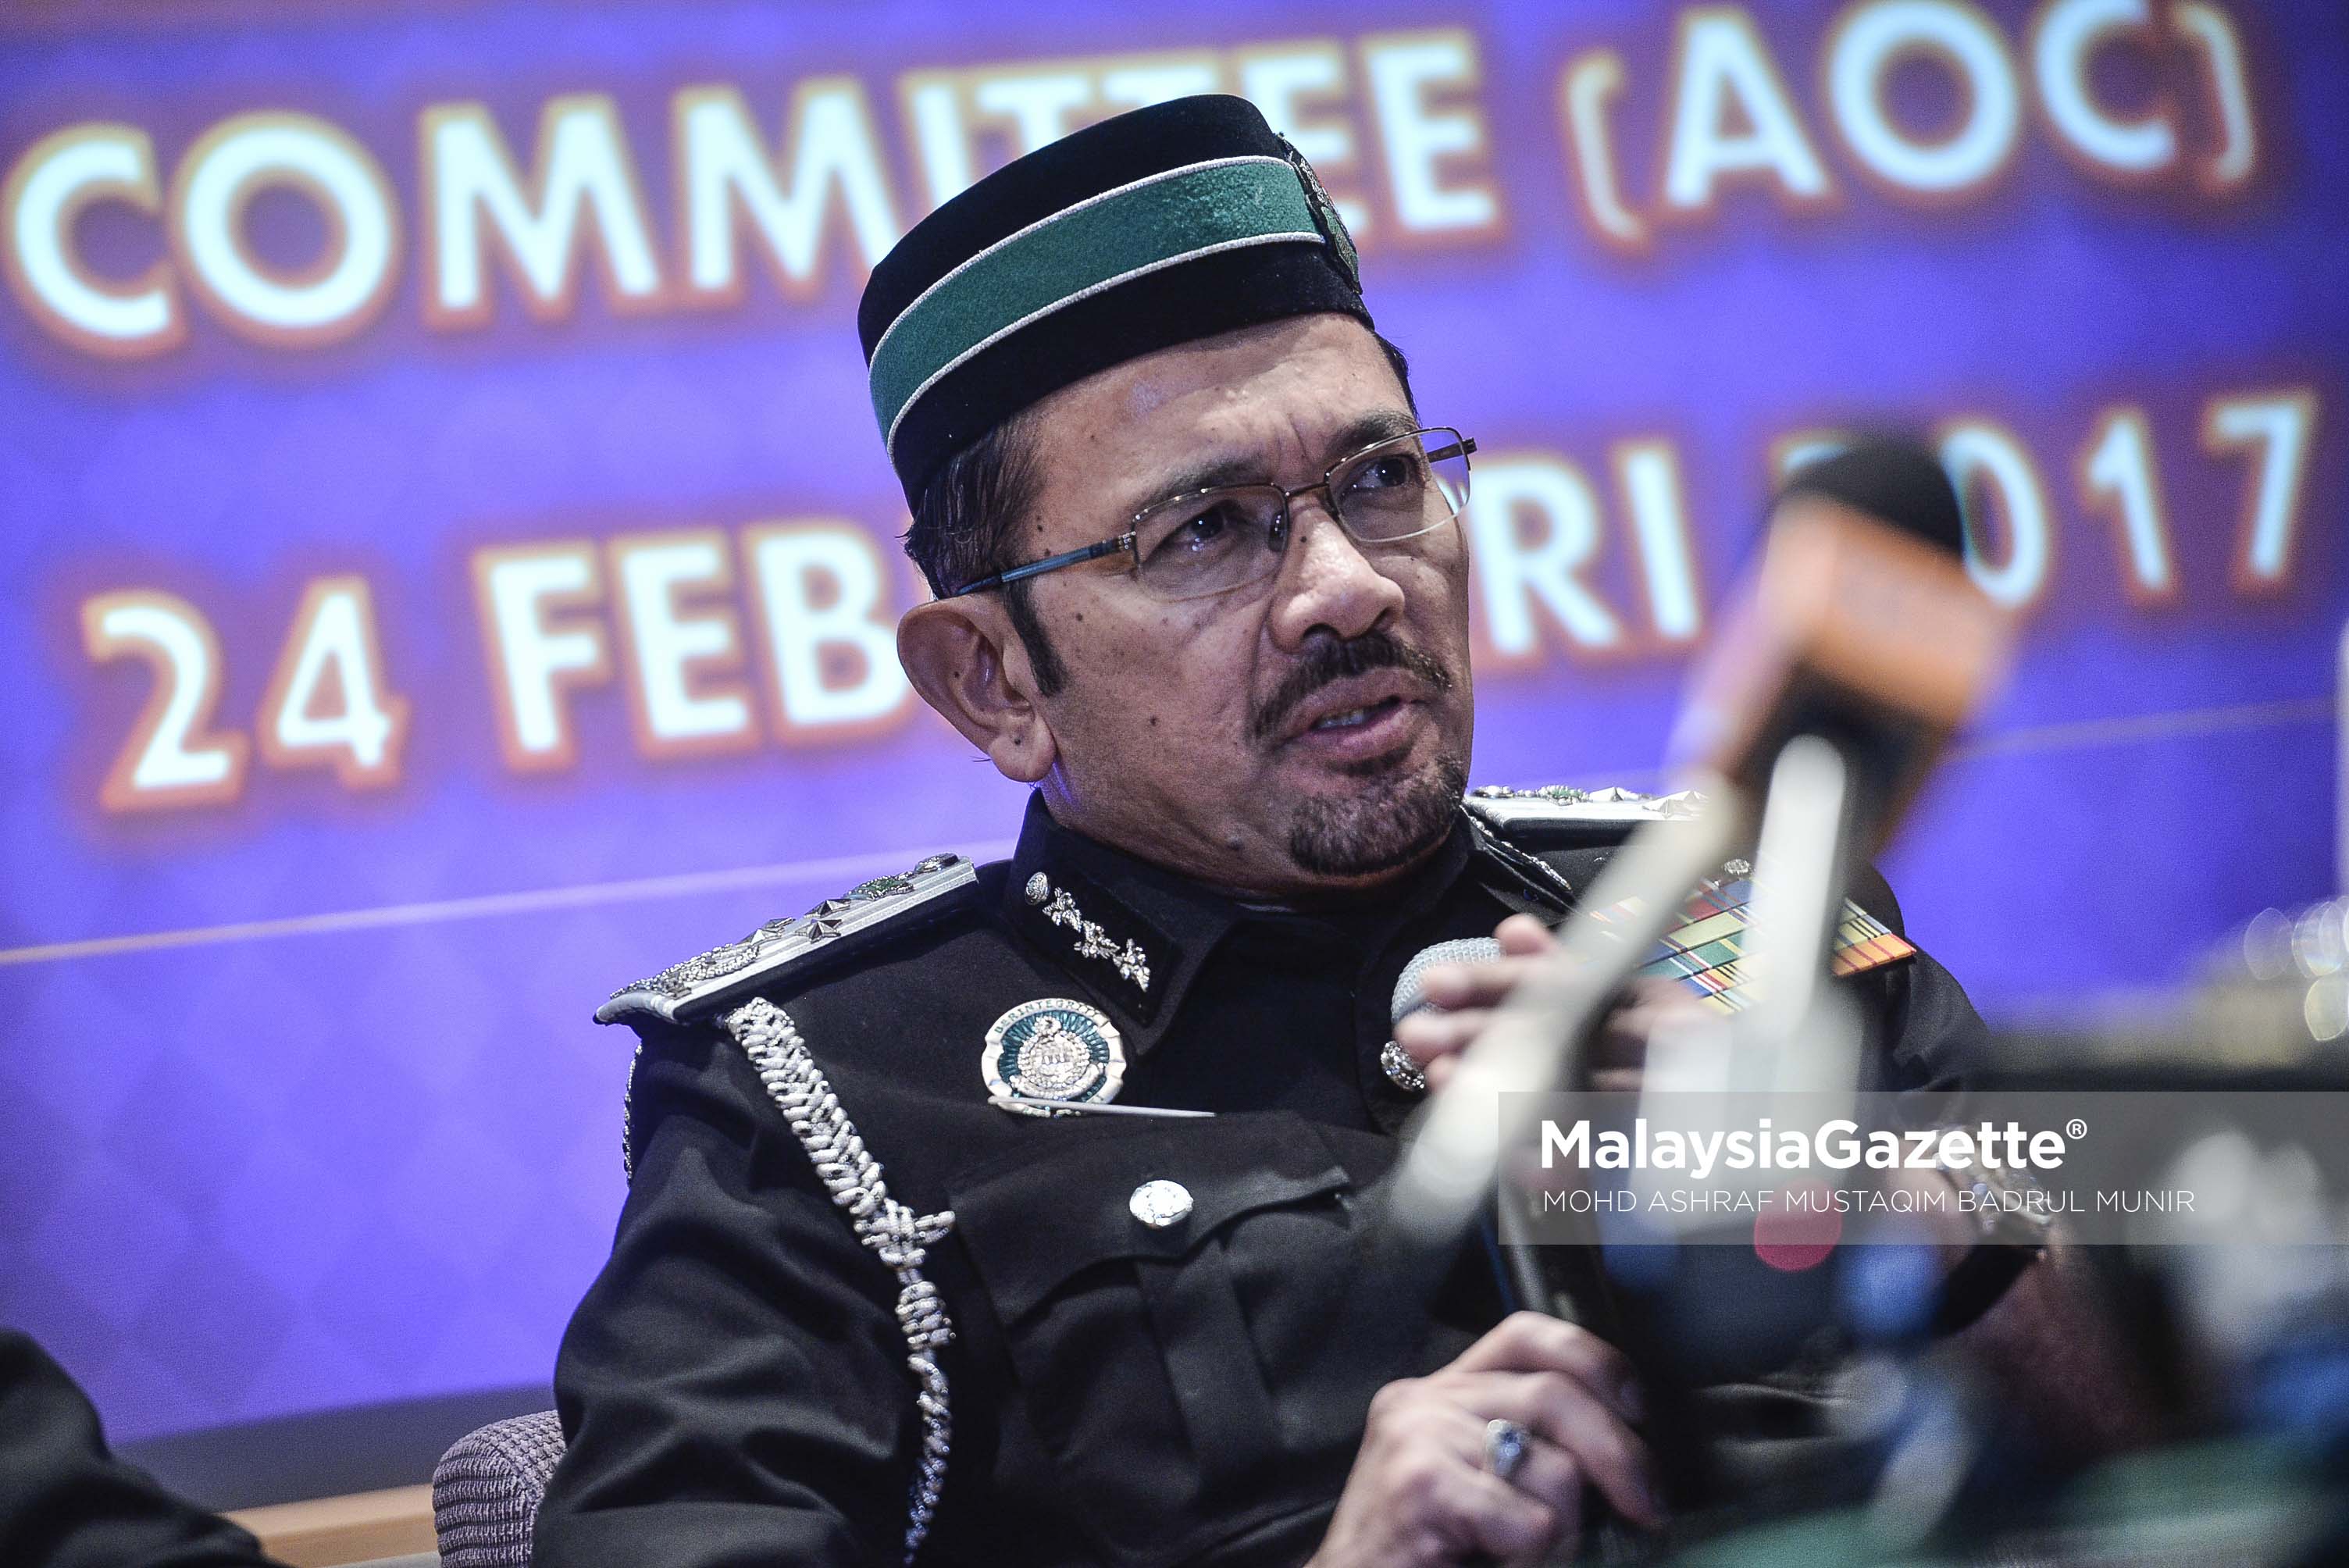 Ketua Pengarah jabatan Imigresen Malaysia, Datuk Seri Mustafar Ali, pada sidang media Jabatan Imigresen dan MAHB di KLIA, Sepang. foto ASHRAF MUSTAQIM BADRUL MUNIR, 24 FEBRUARI 2017.